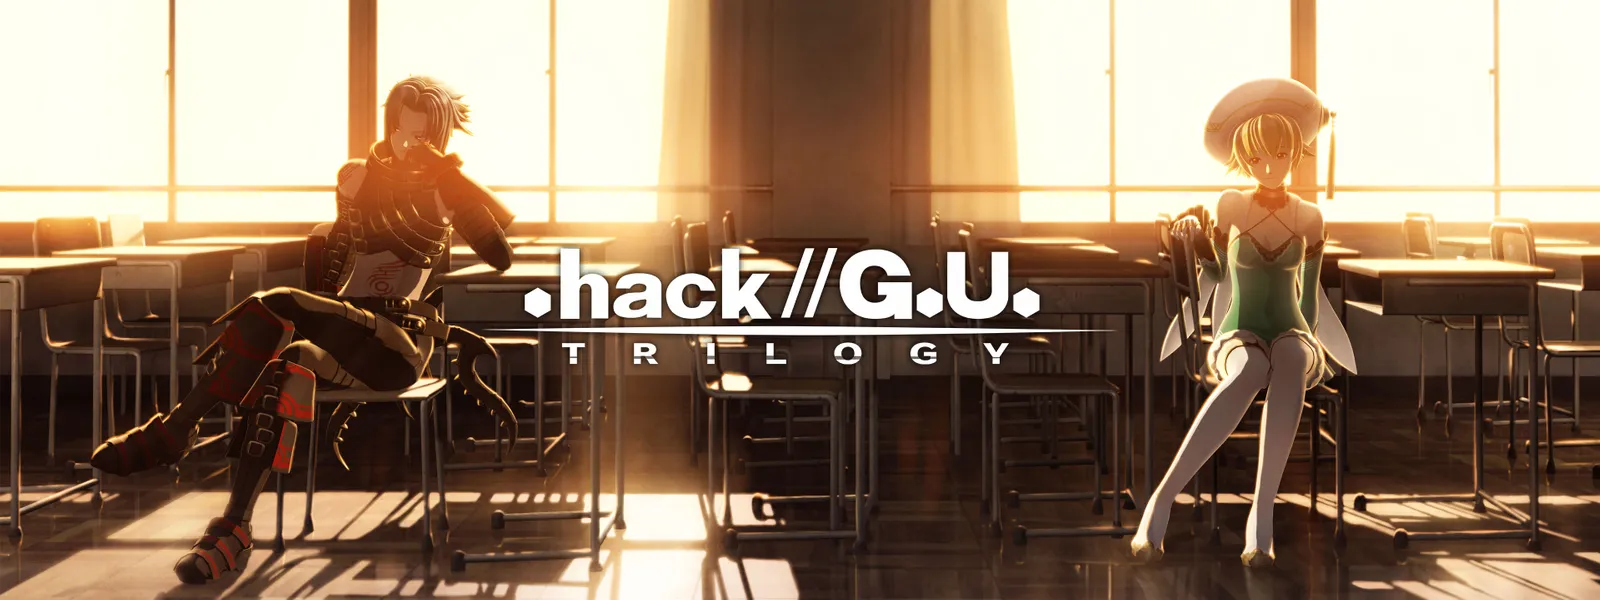 hack//G.U. Trilogy - Pictures 